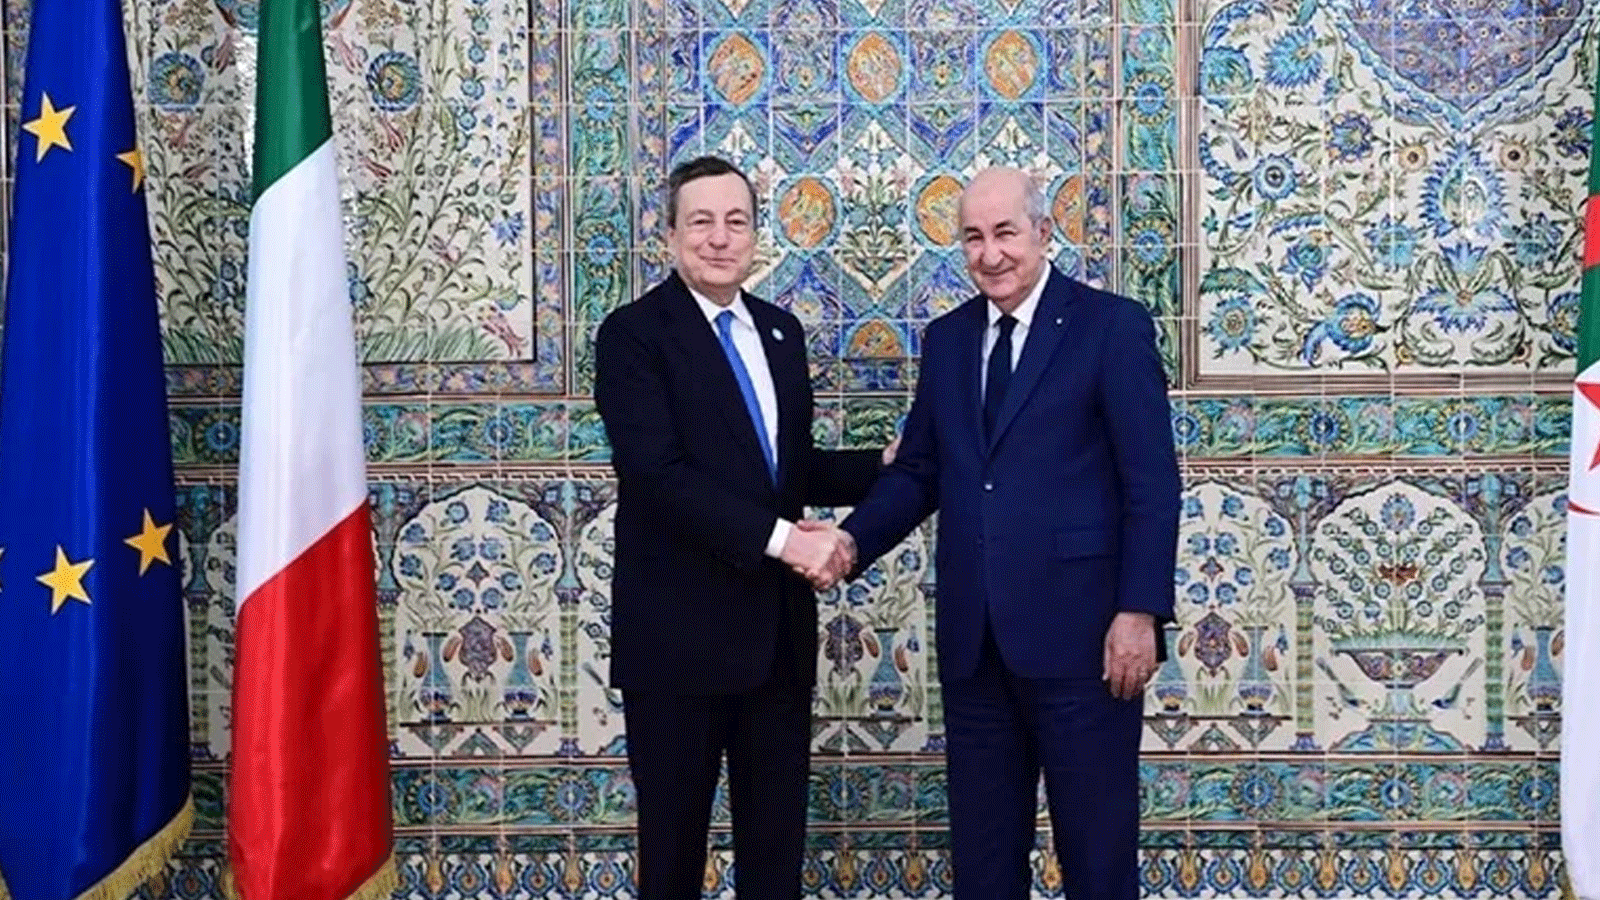 الرئيس الجزائري عبدالمجيد تبون يصافح رئيس الوزراء الايطالي ماريو دراغي